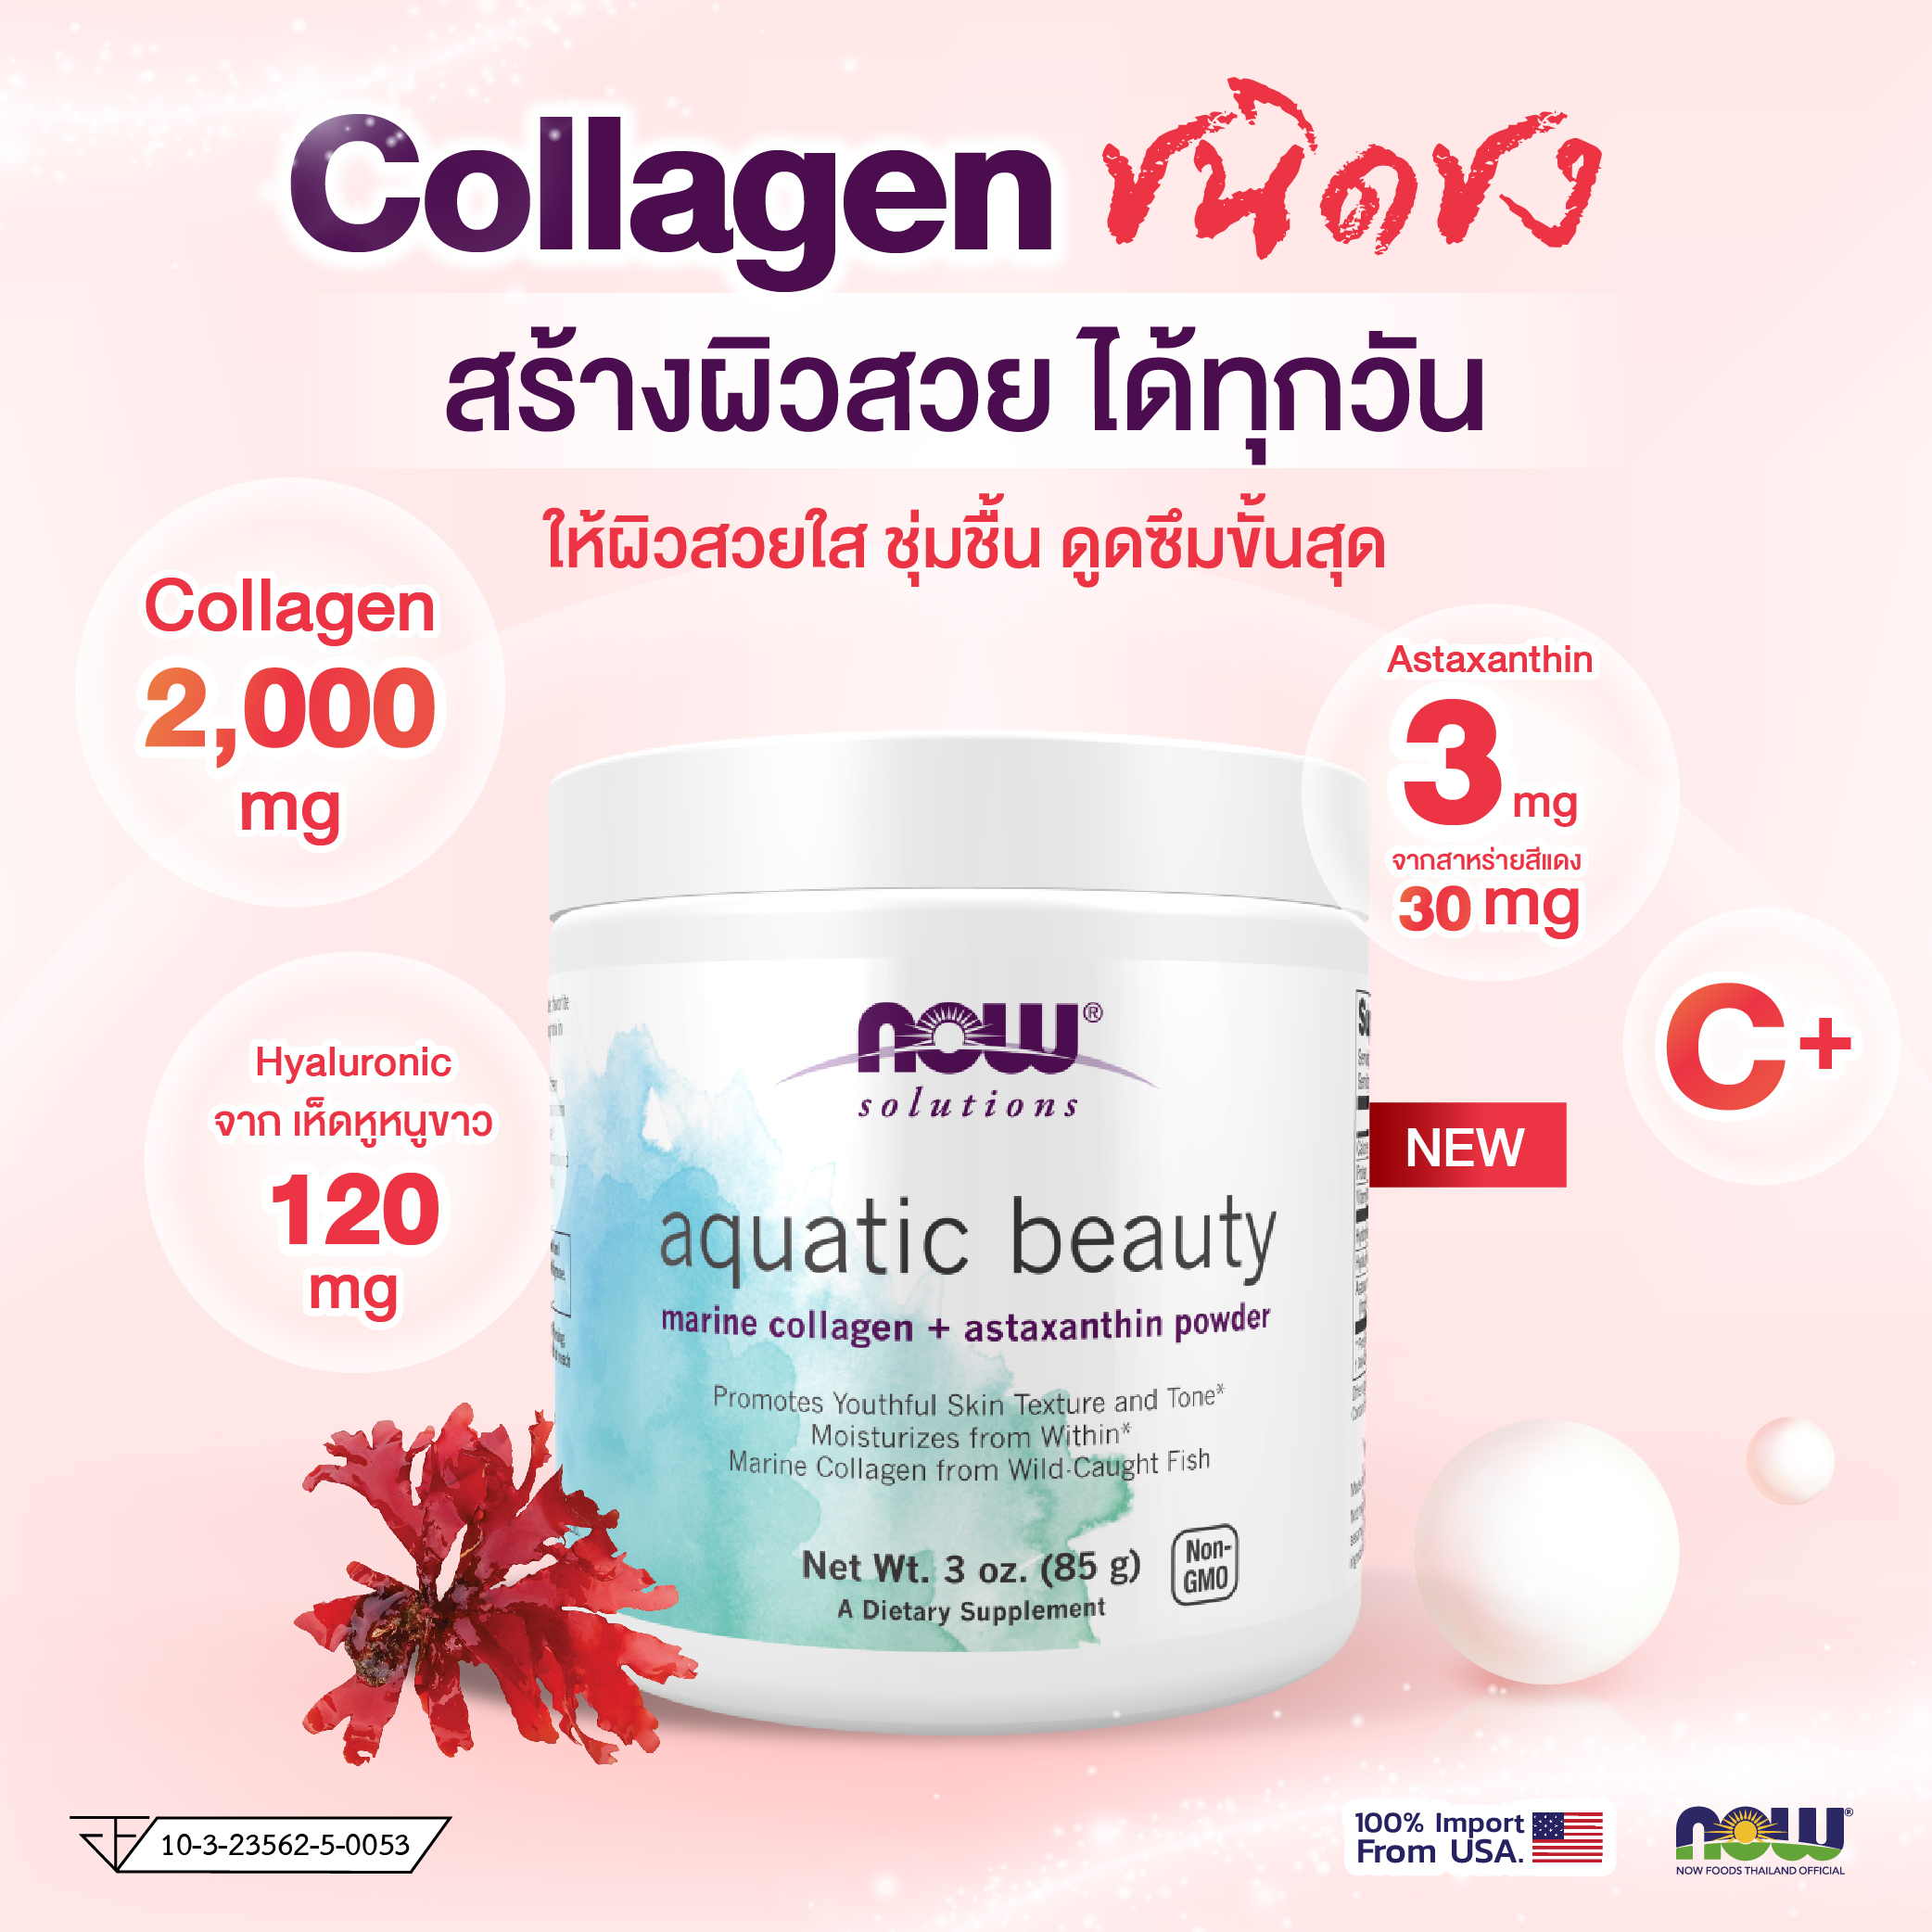 NOW Aquatic Beauty Powder (3oz)